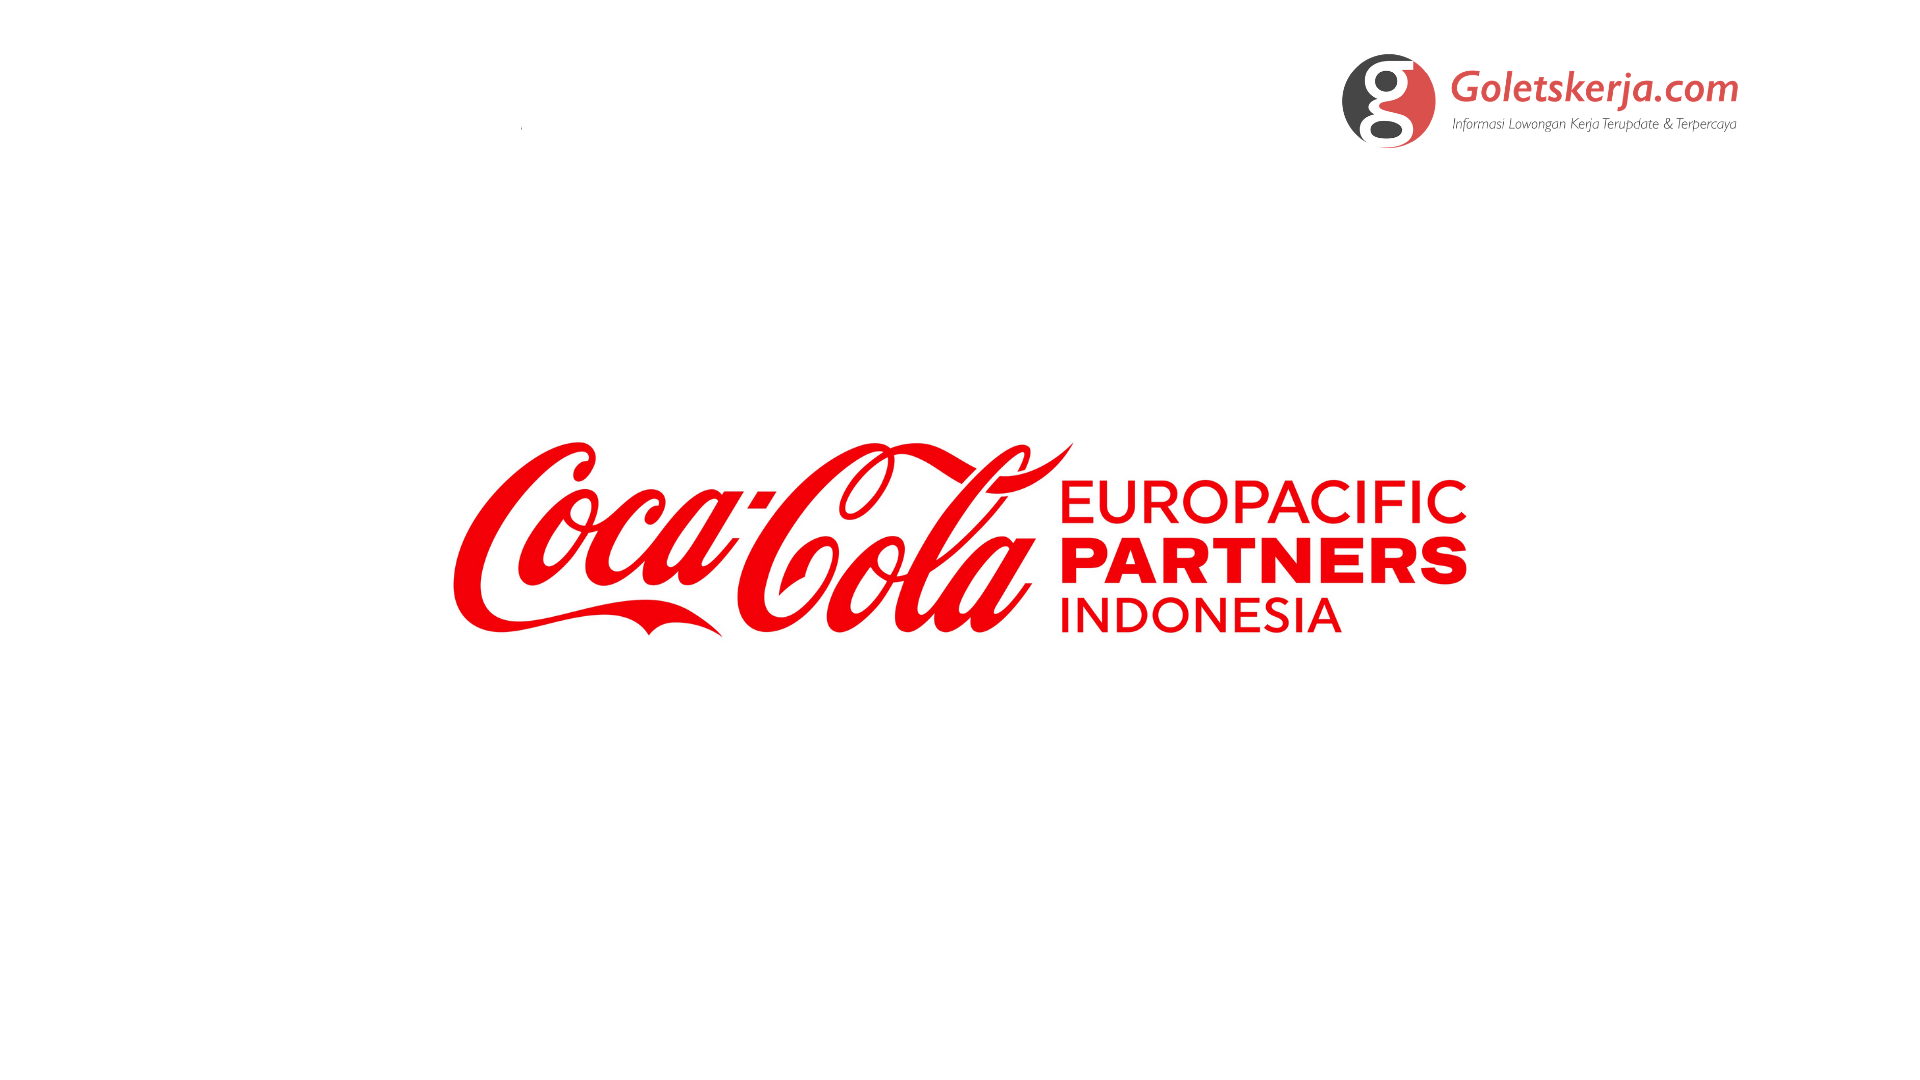 Lowongan Kerja Coca-cola Europacific Partners Indonesia